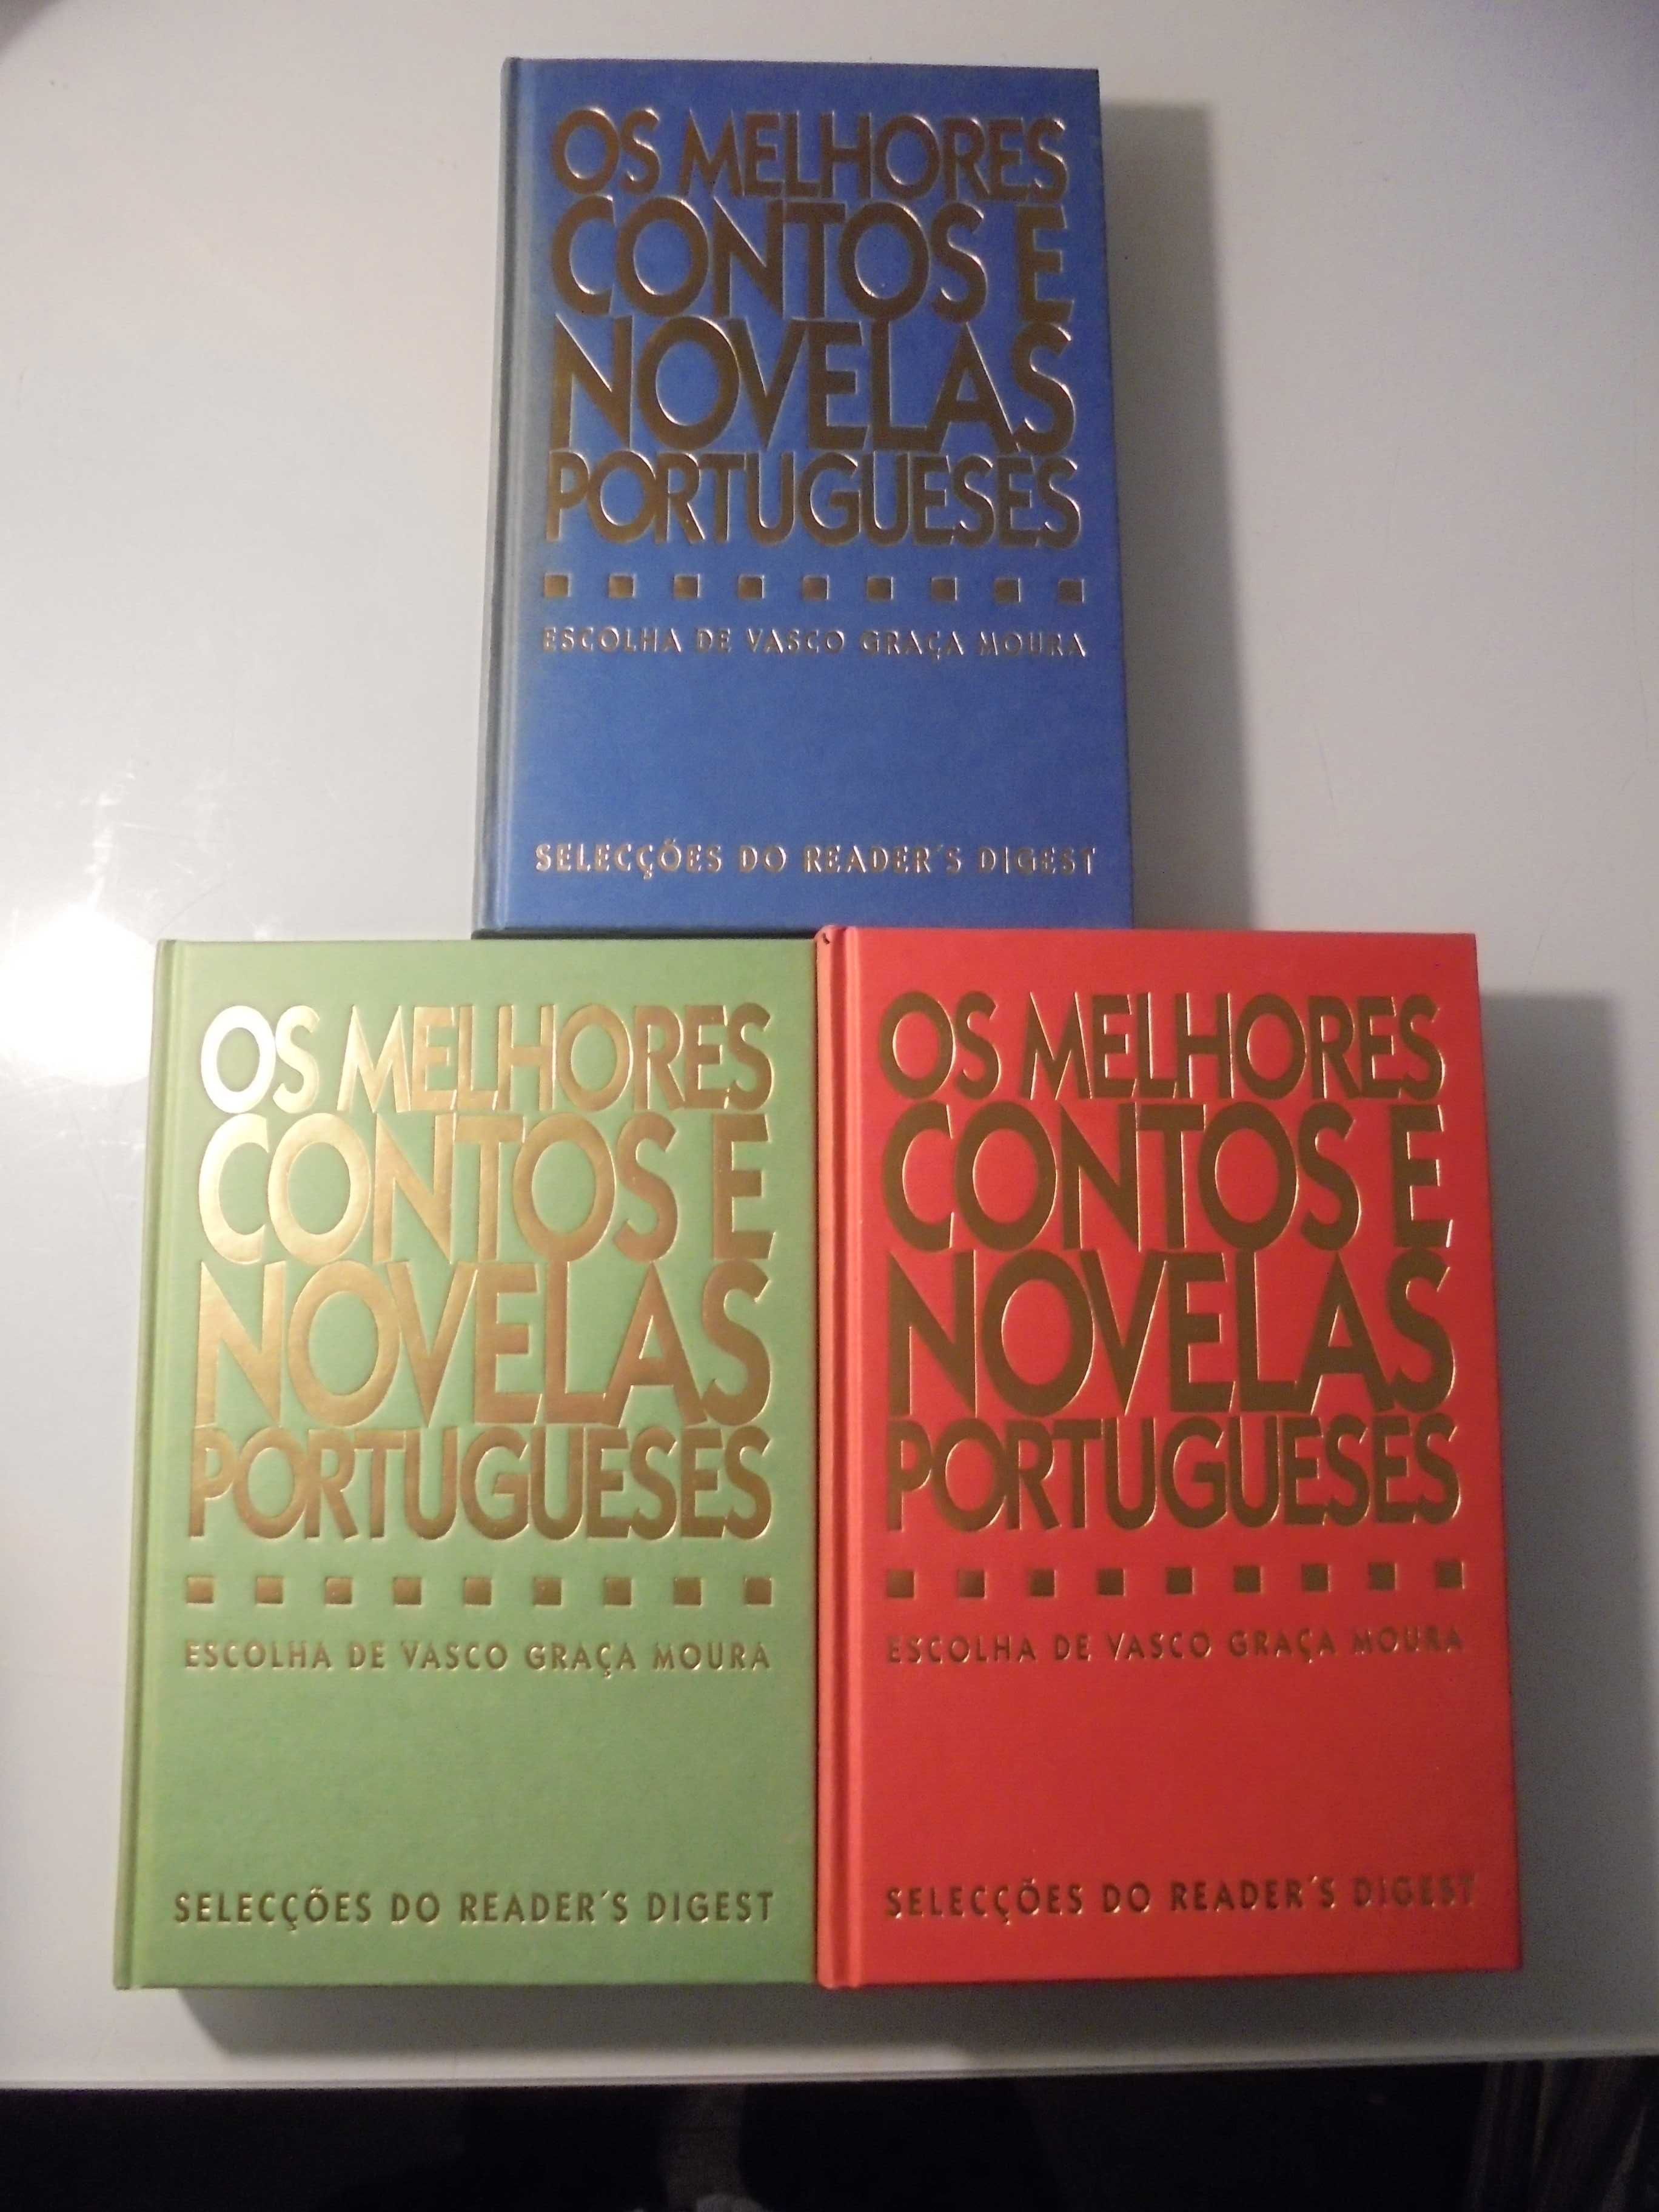 Moura (Vasco Graça);Os Melhores Contos e Novelas Portuguesa